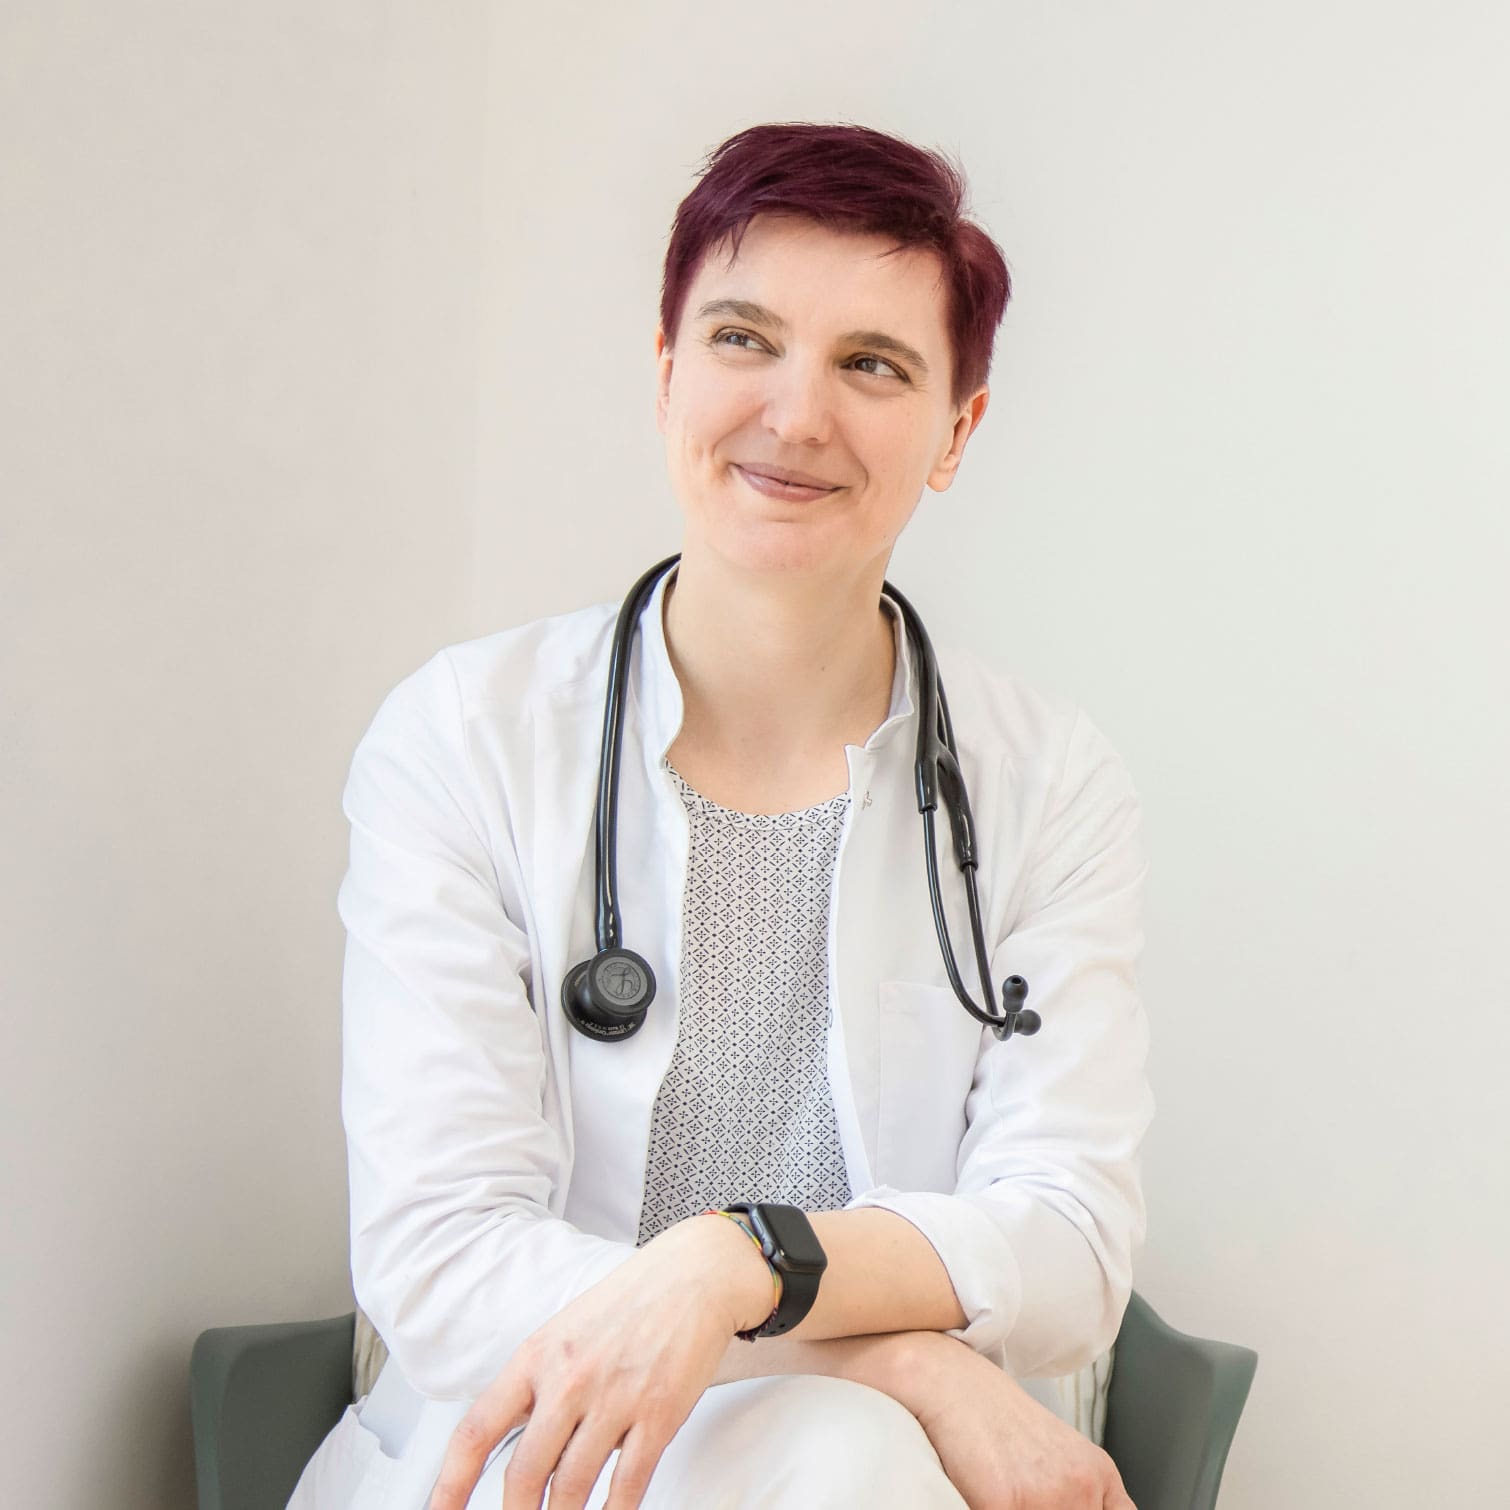 Dr. Dissauer, eine Dame mit rötlich gefärbten, kurzen Haaren, sitzt im Arztkittel und Stethoskop um den Hals auf einem Stuhl, blickt nach rechts lächelt